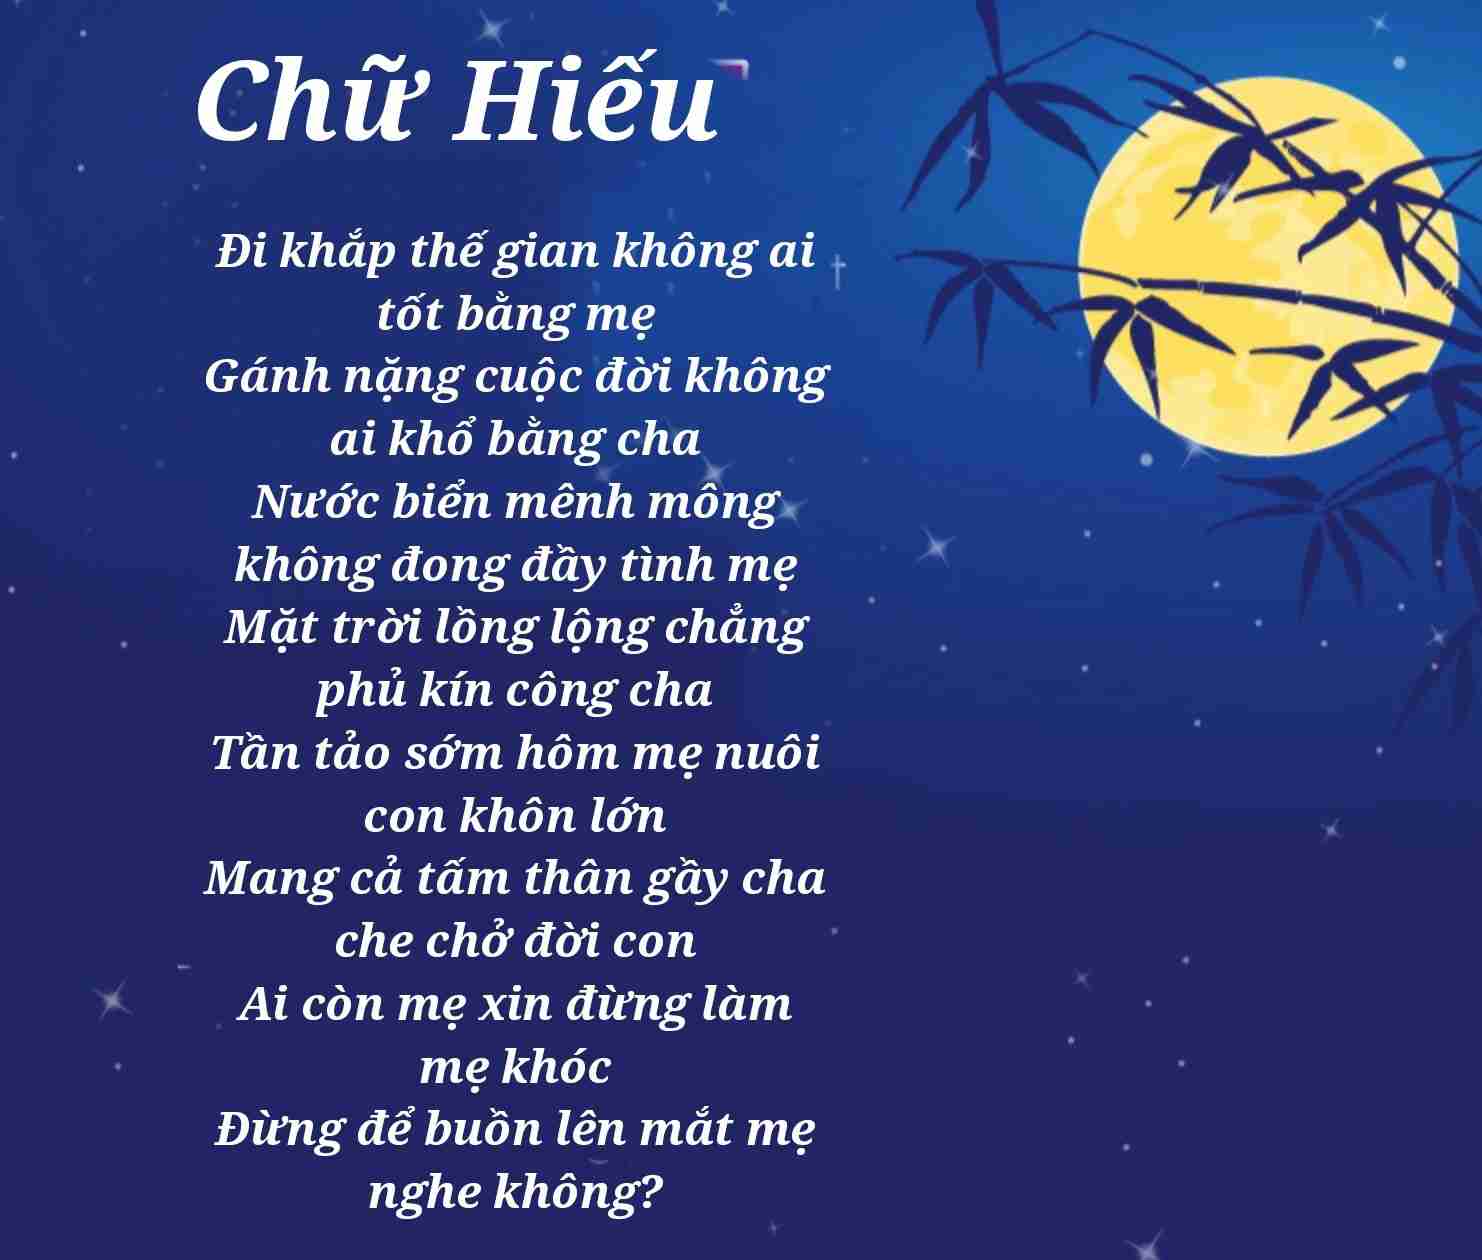 Chữ hiếu: Đây là giá trị cốt lõi trong truyền thống văn hóa Việt Nam. Hãy cùng chiêm ngưỡng những bức ảnh liên quan đến chữ hiếu để tìm hiểu và cảm nhận sự quan trọng và ý nghĩa của chữ hiếu trong cuộc sống.